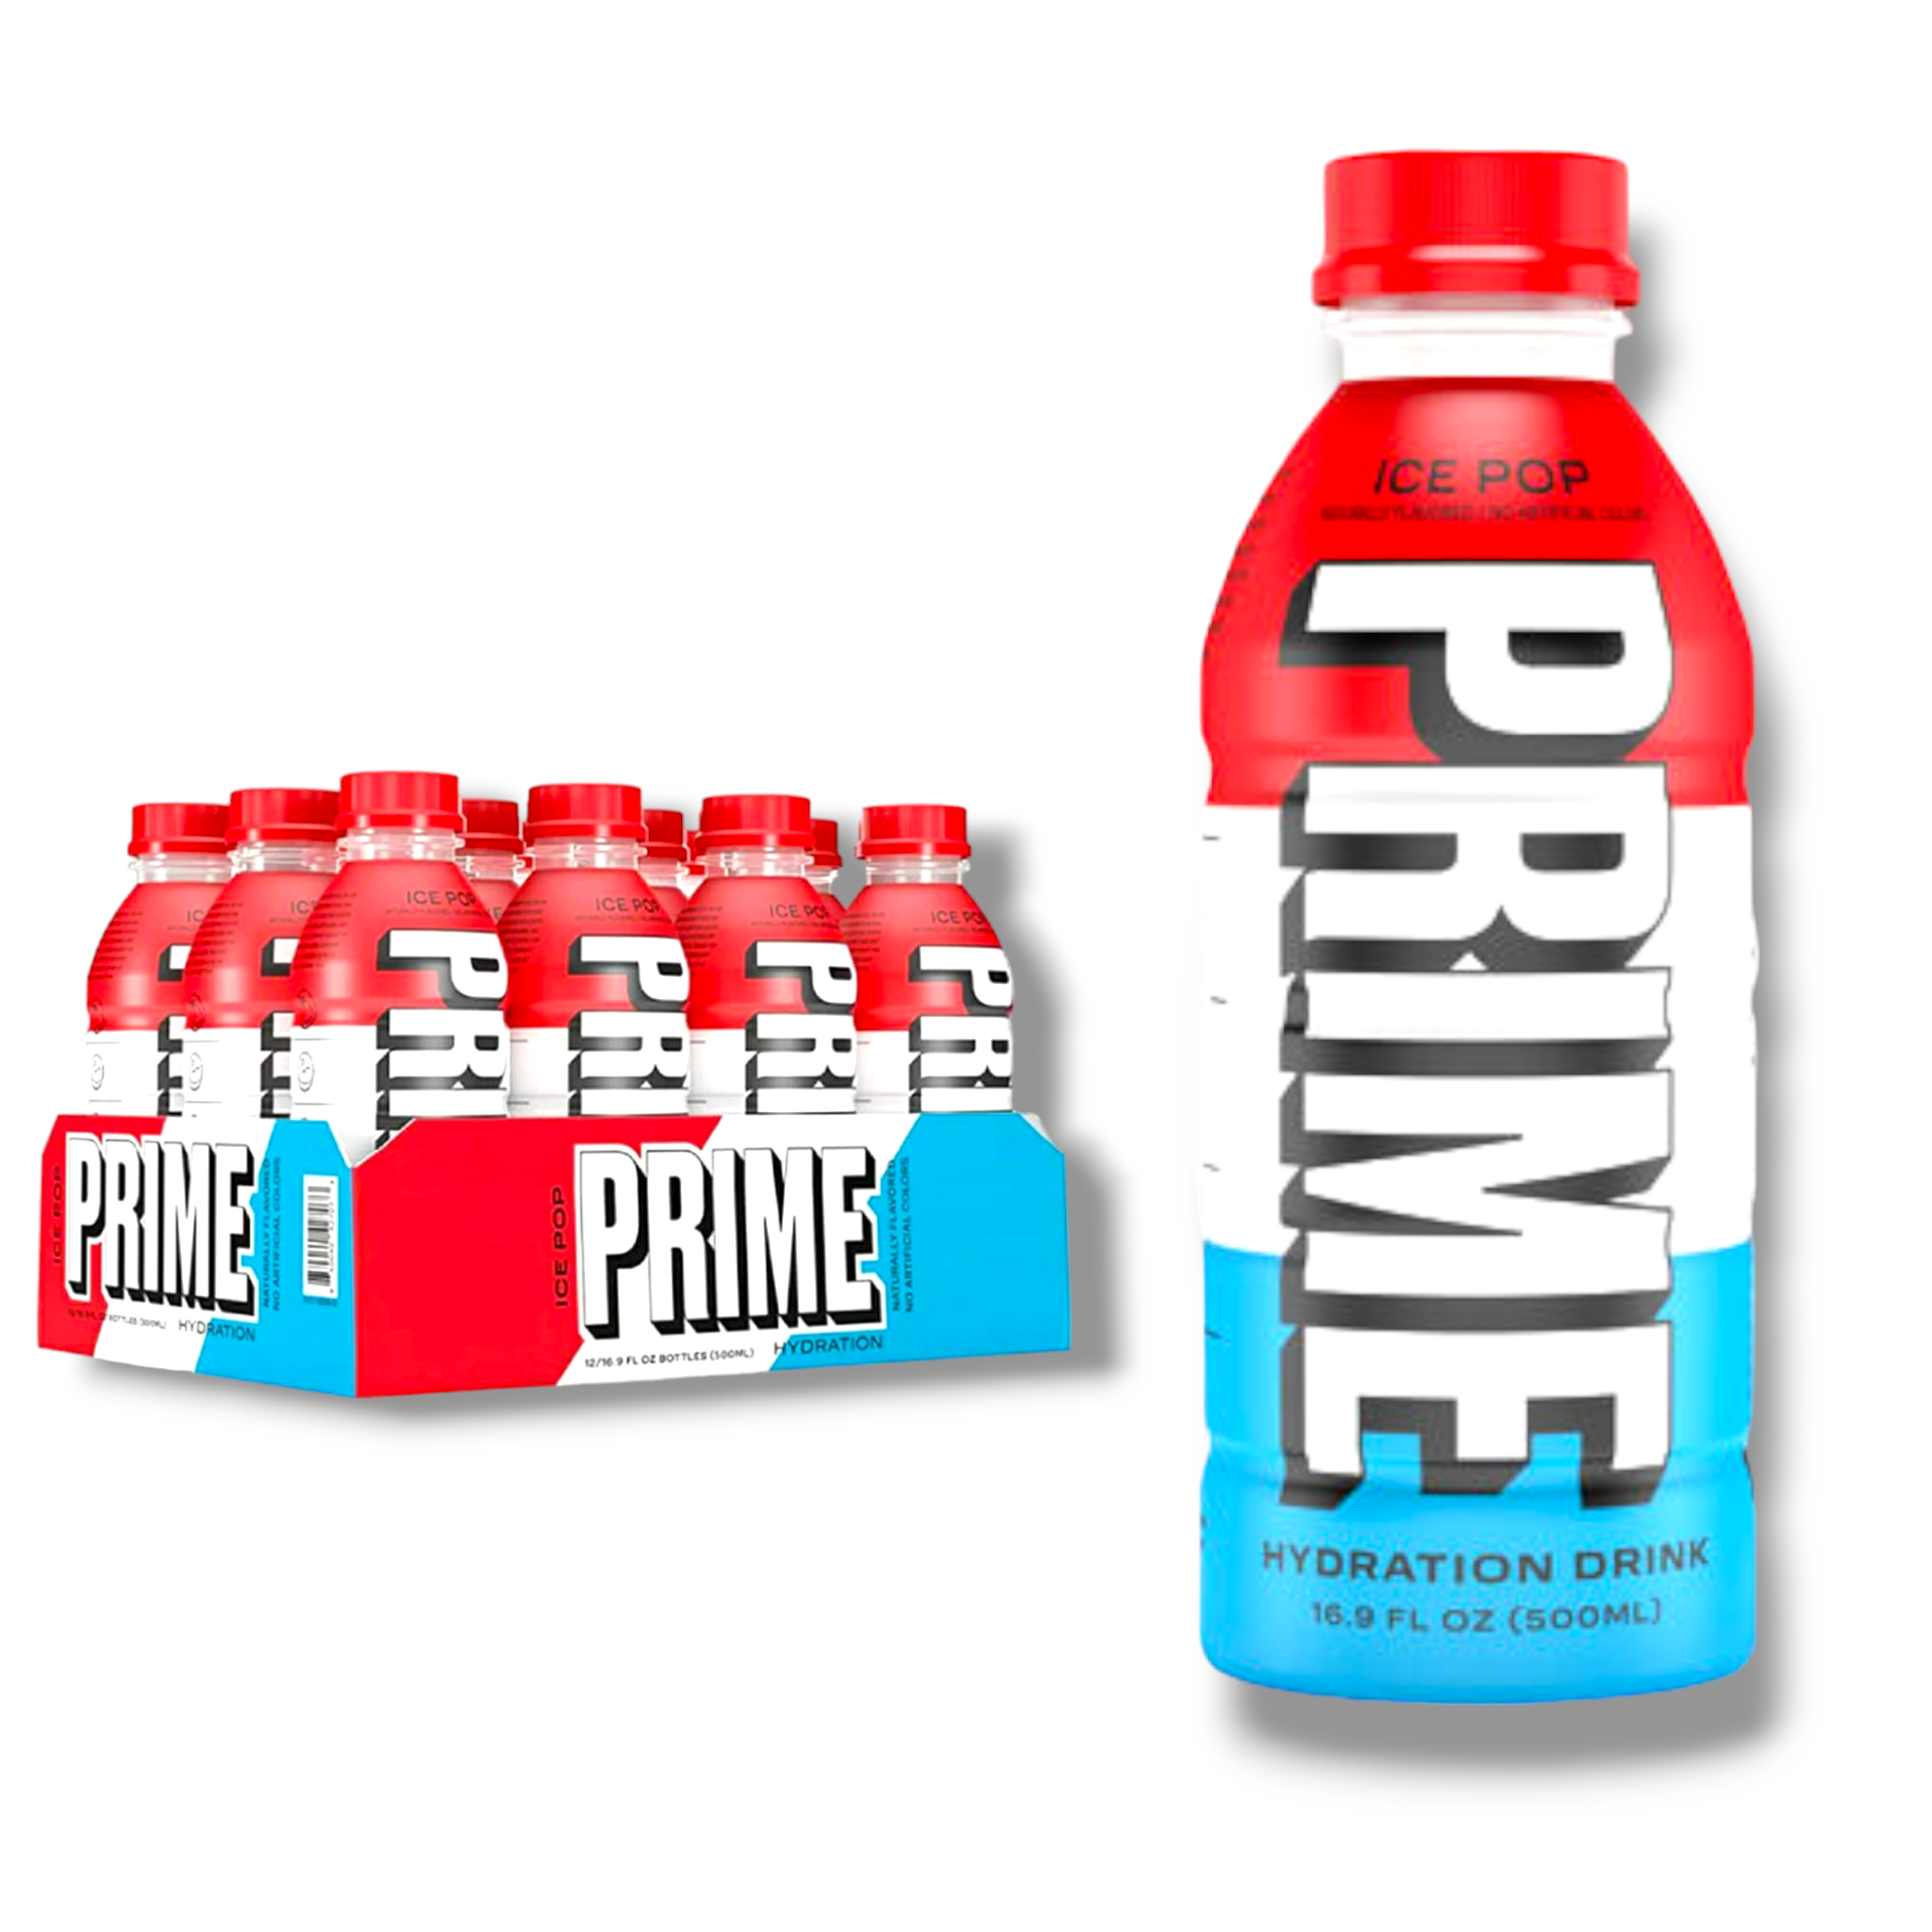 Prime Hydration Drink - Ice Pop 500ml- Sportdrink von Logan Paul & KSI-Koffeinfrei